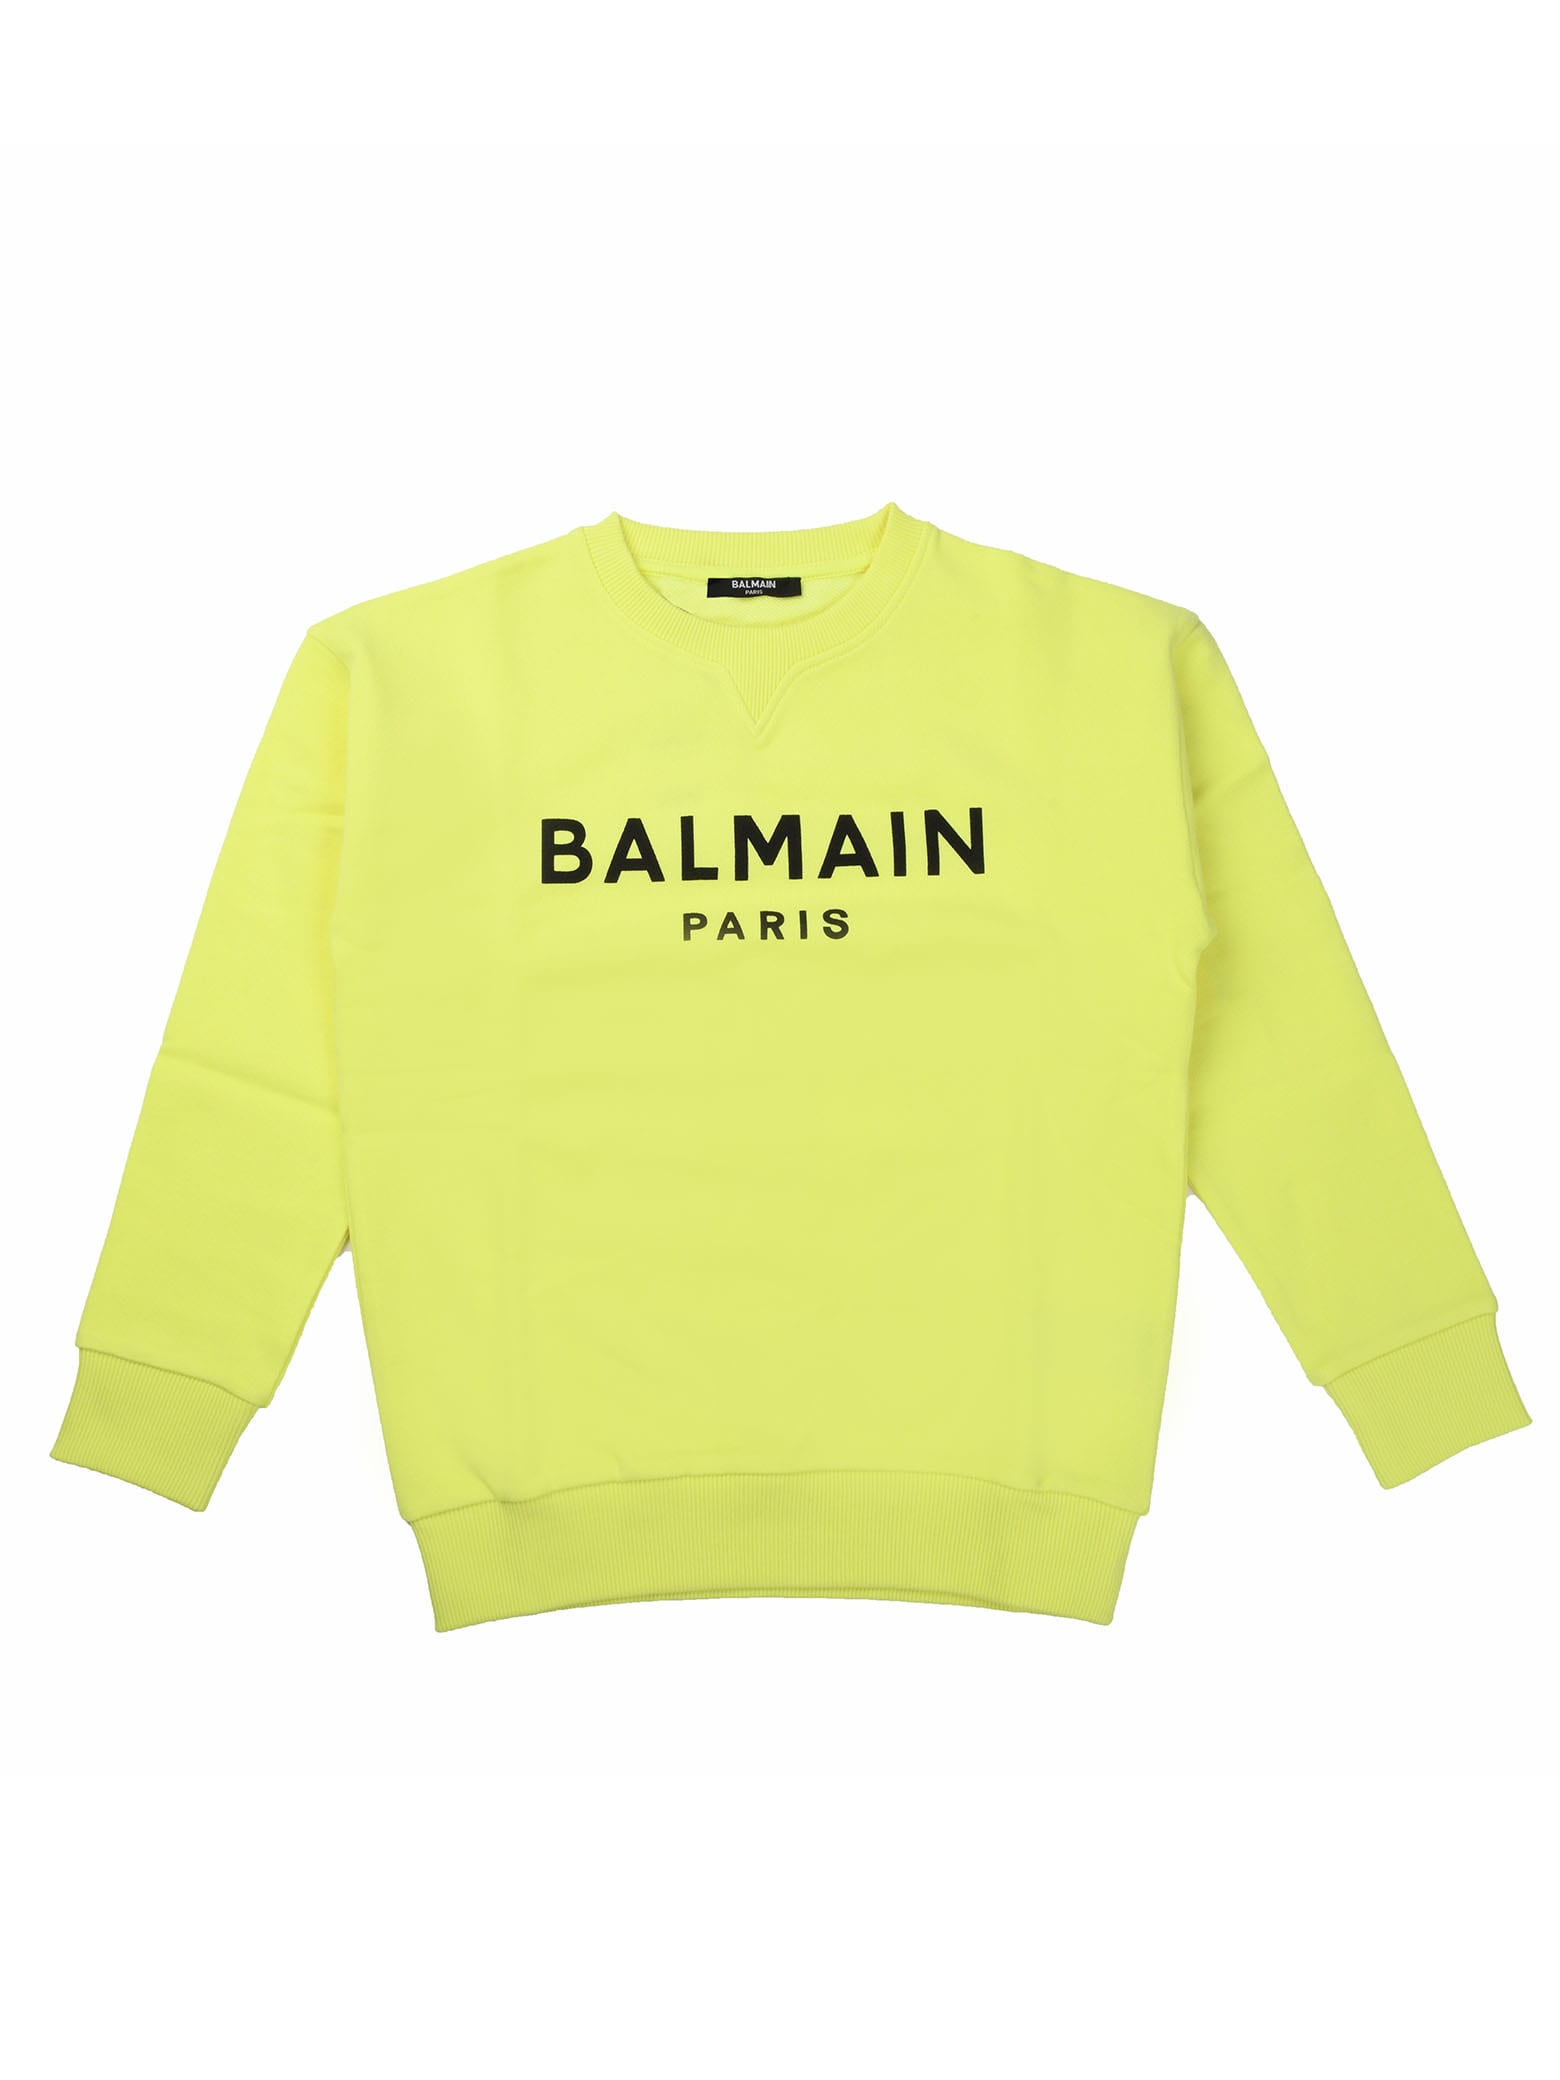 Fluo Yellow Sweatshirt With Balmain Logo